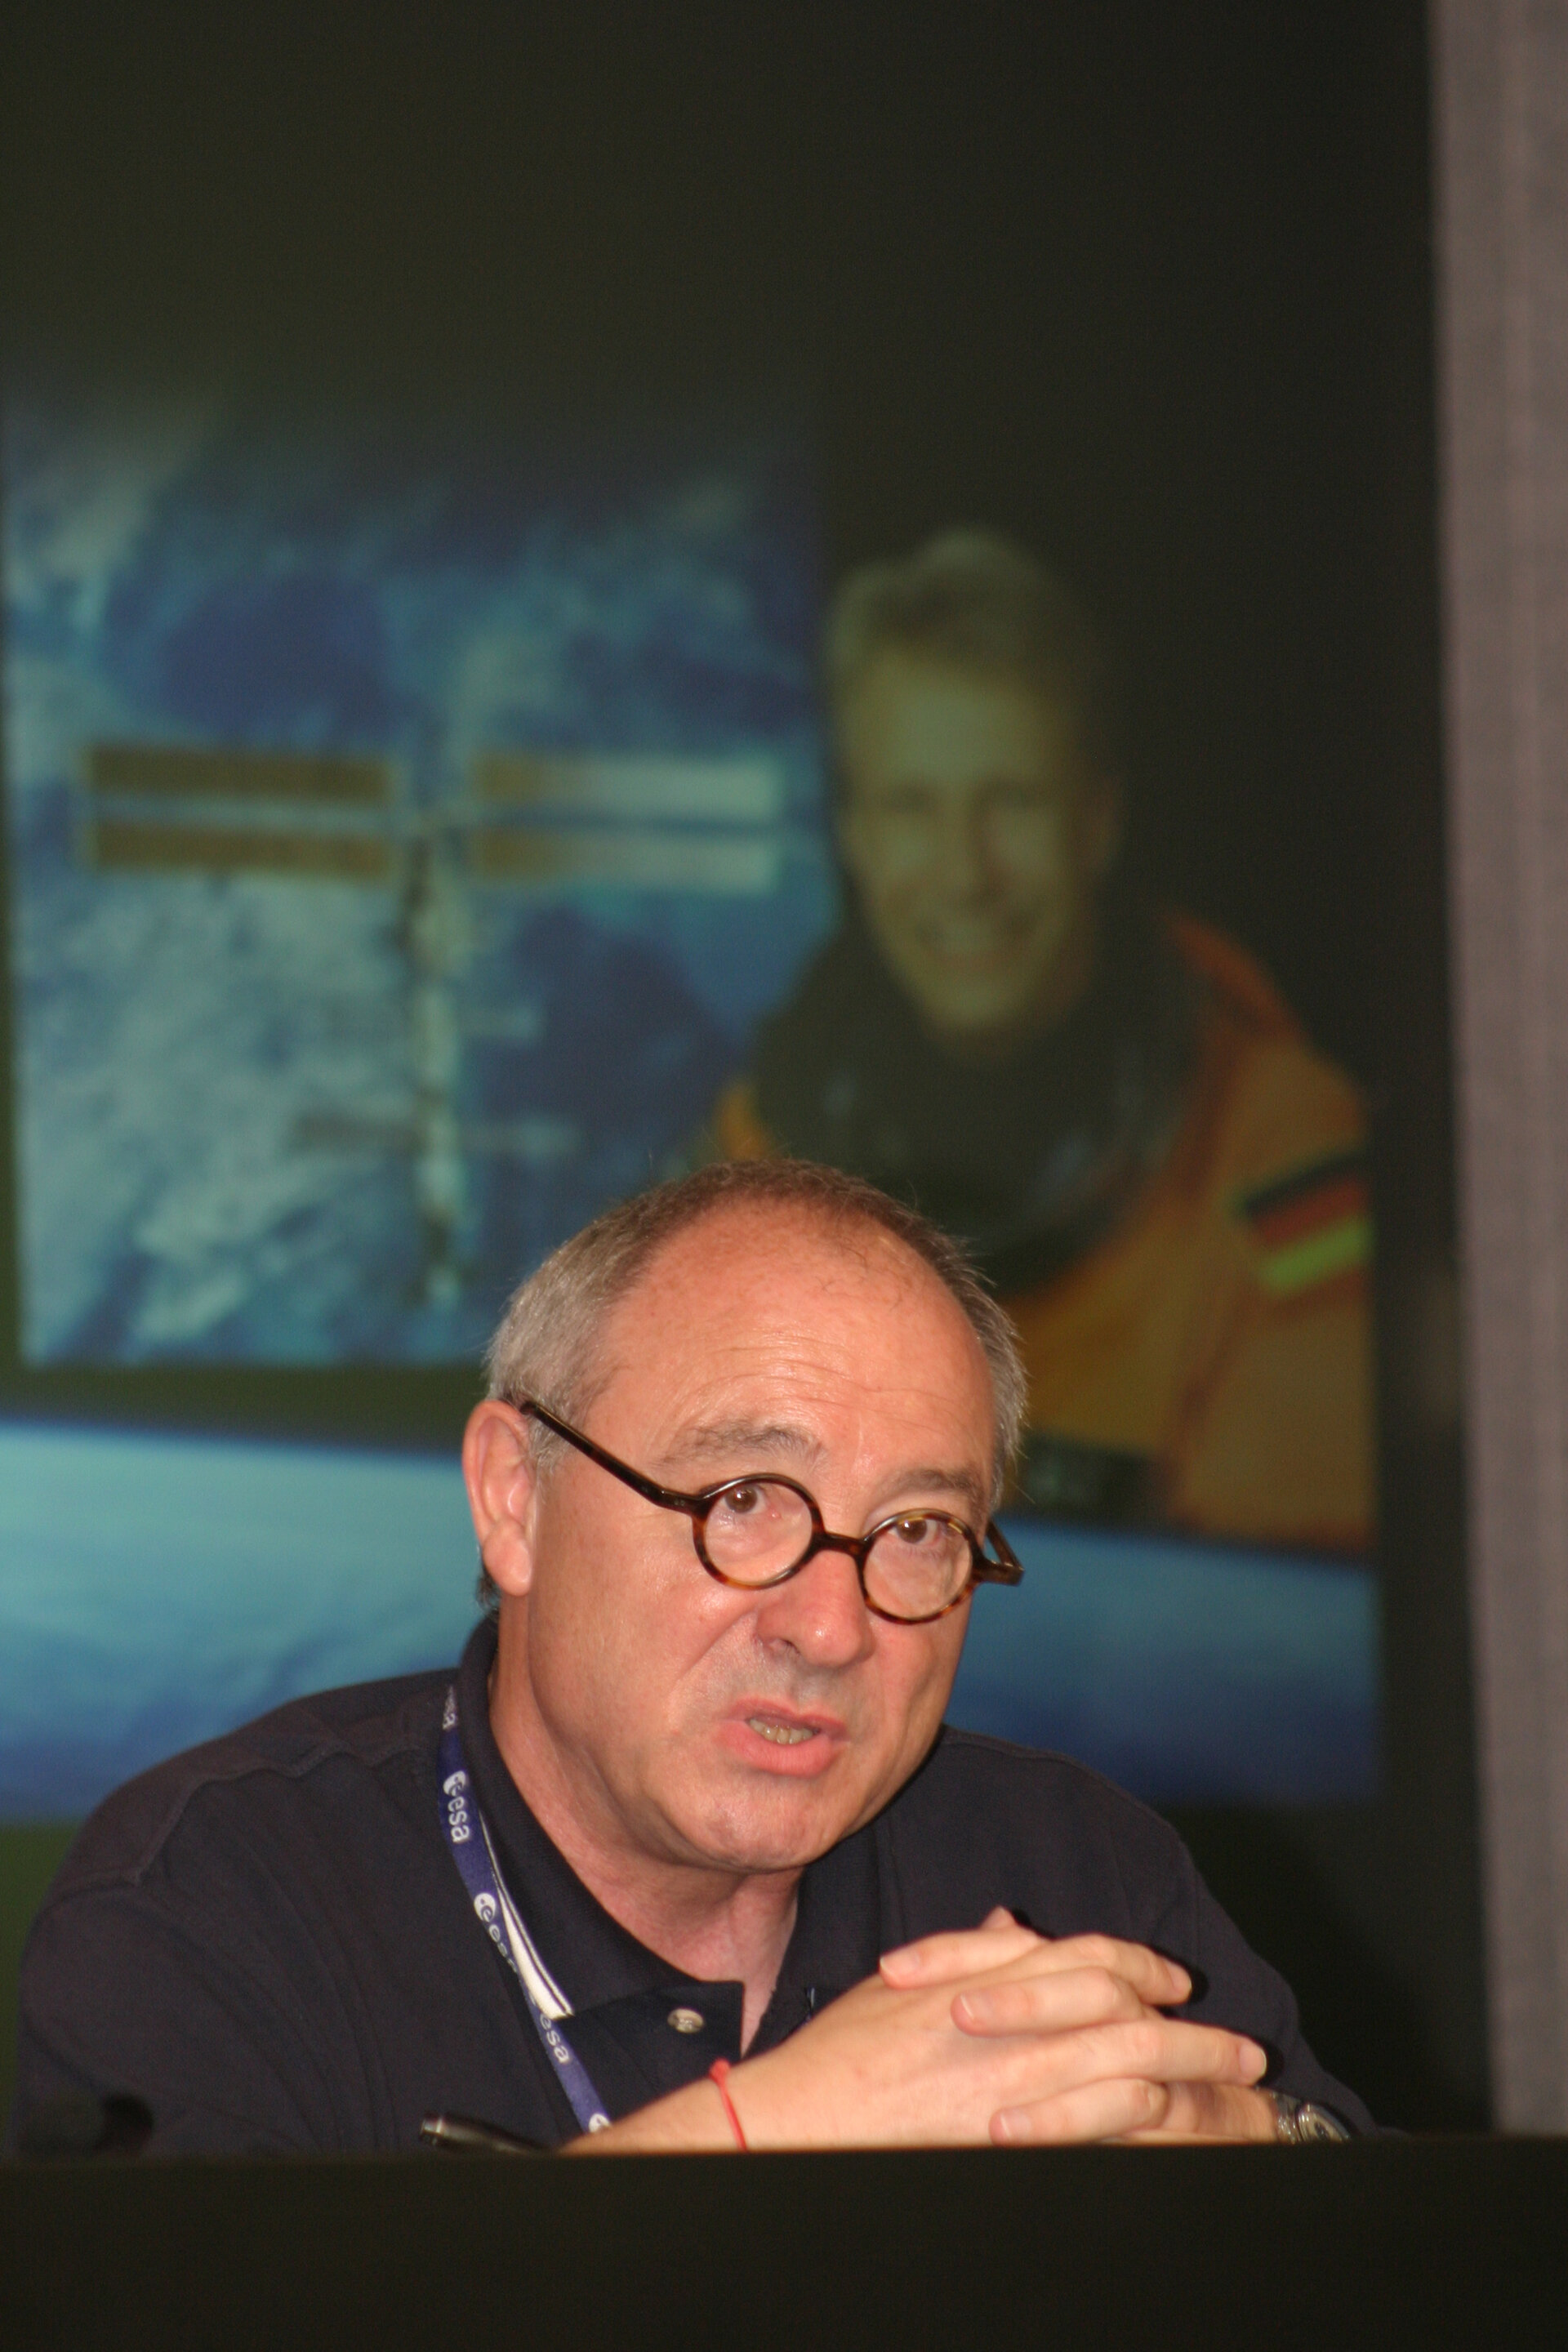 ESA Director General Jean-Jacques Dordain